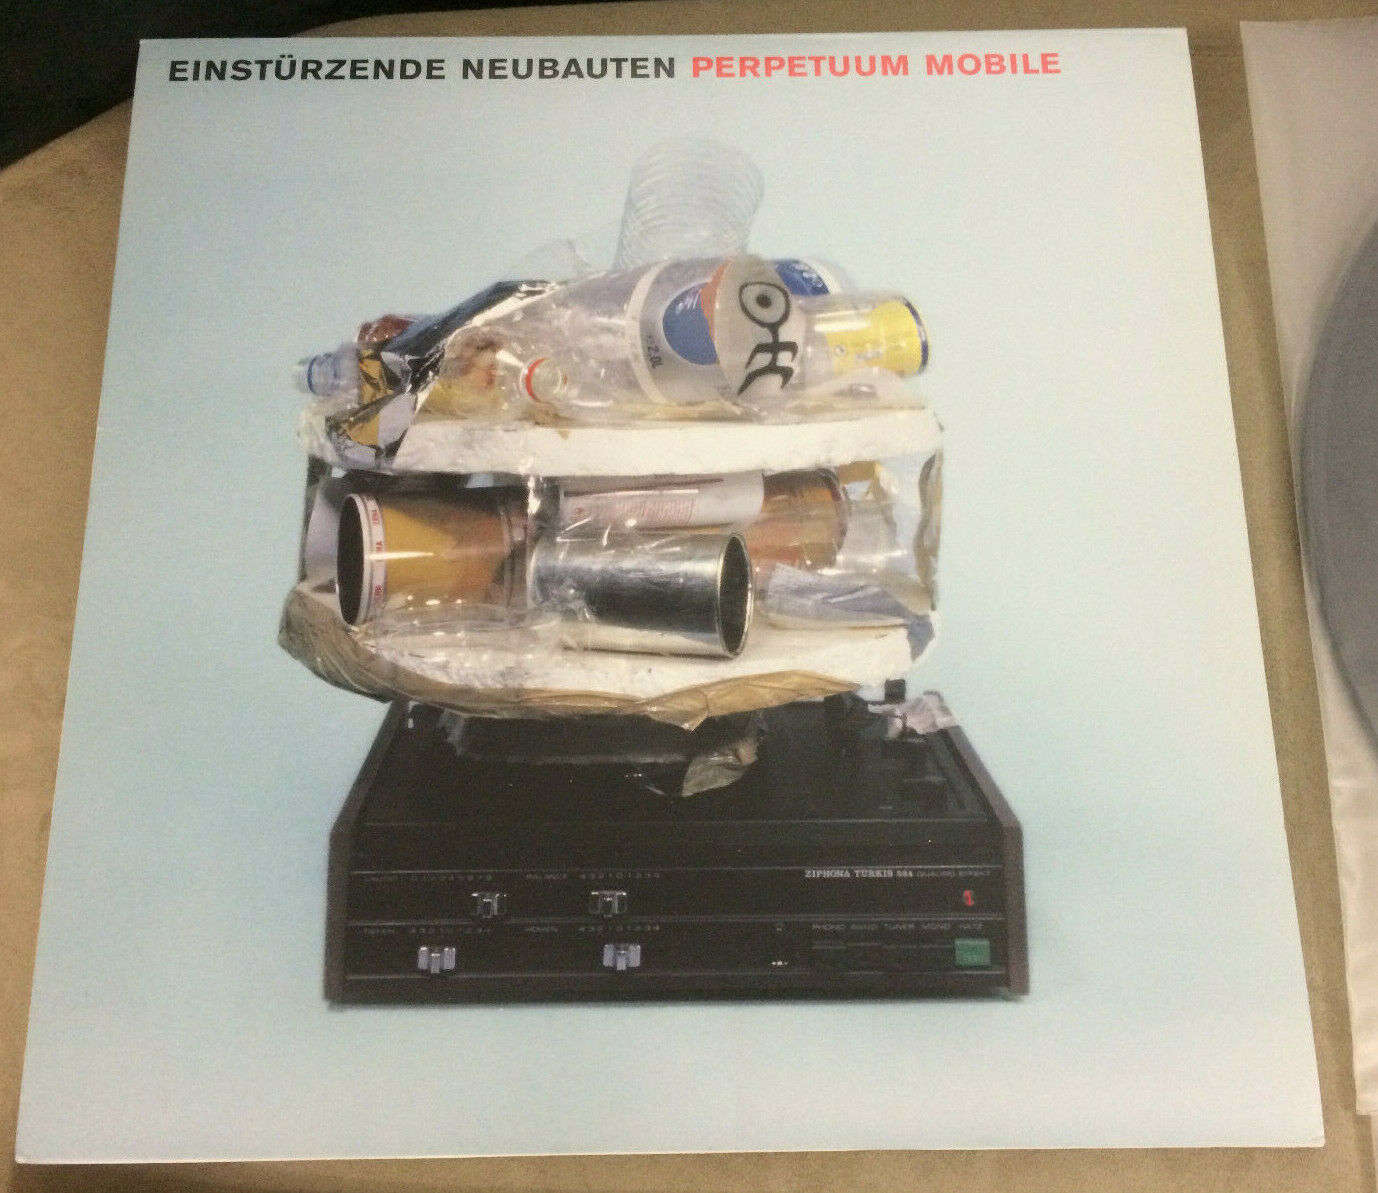 popsike.com - Einstürzende Neubauten Perpetuum Mobile Vinyl LP